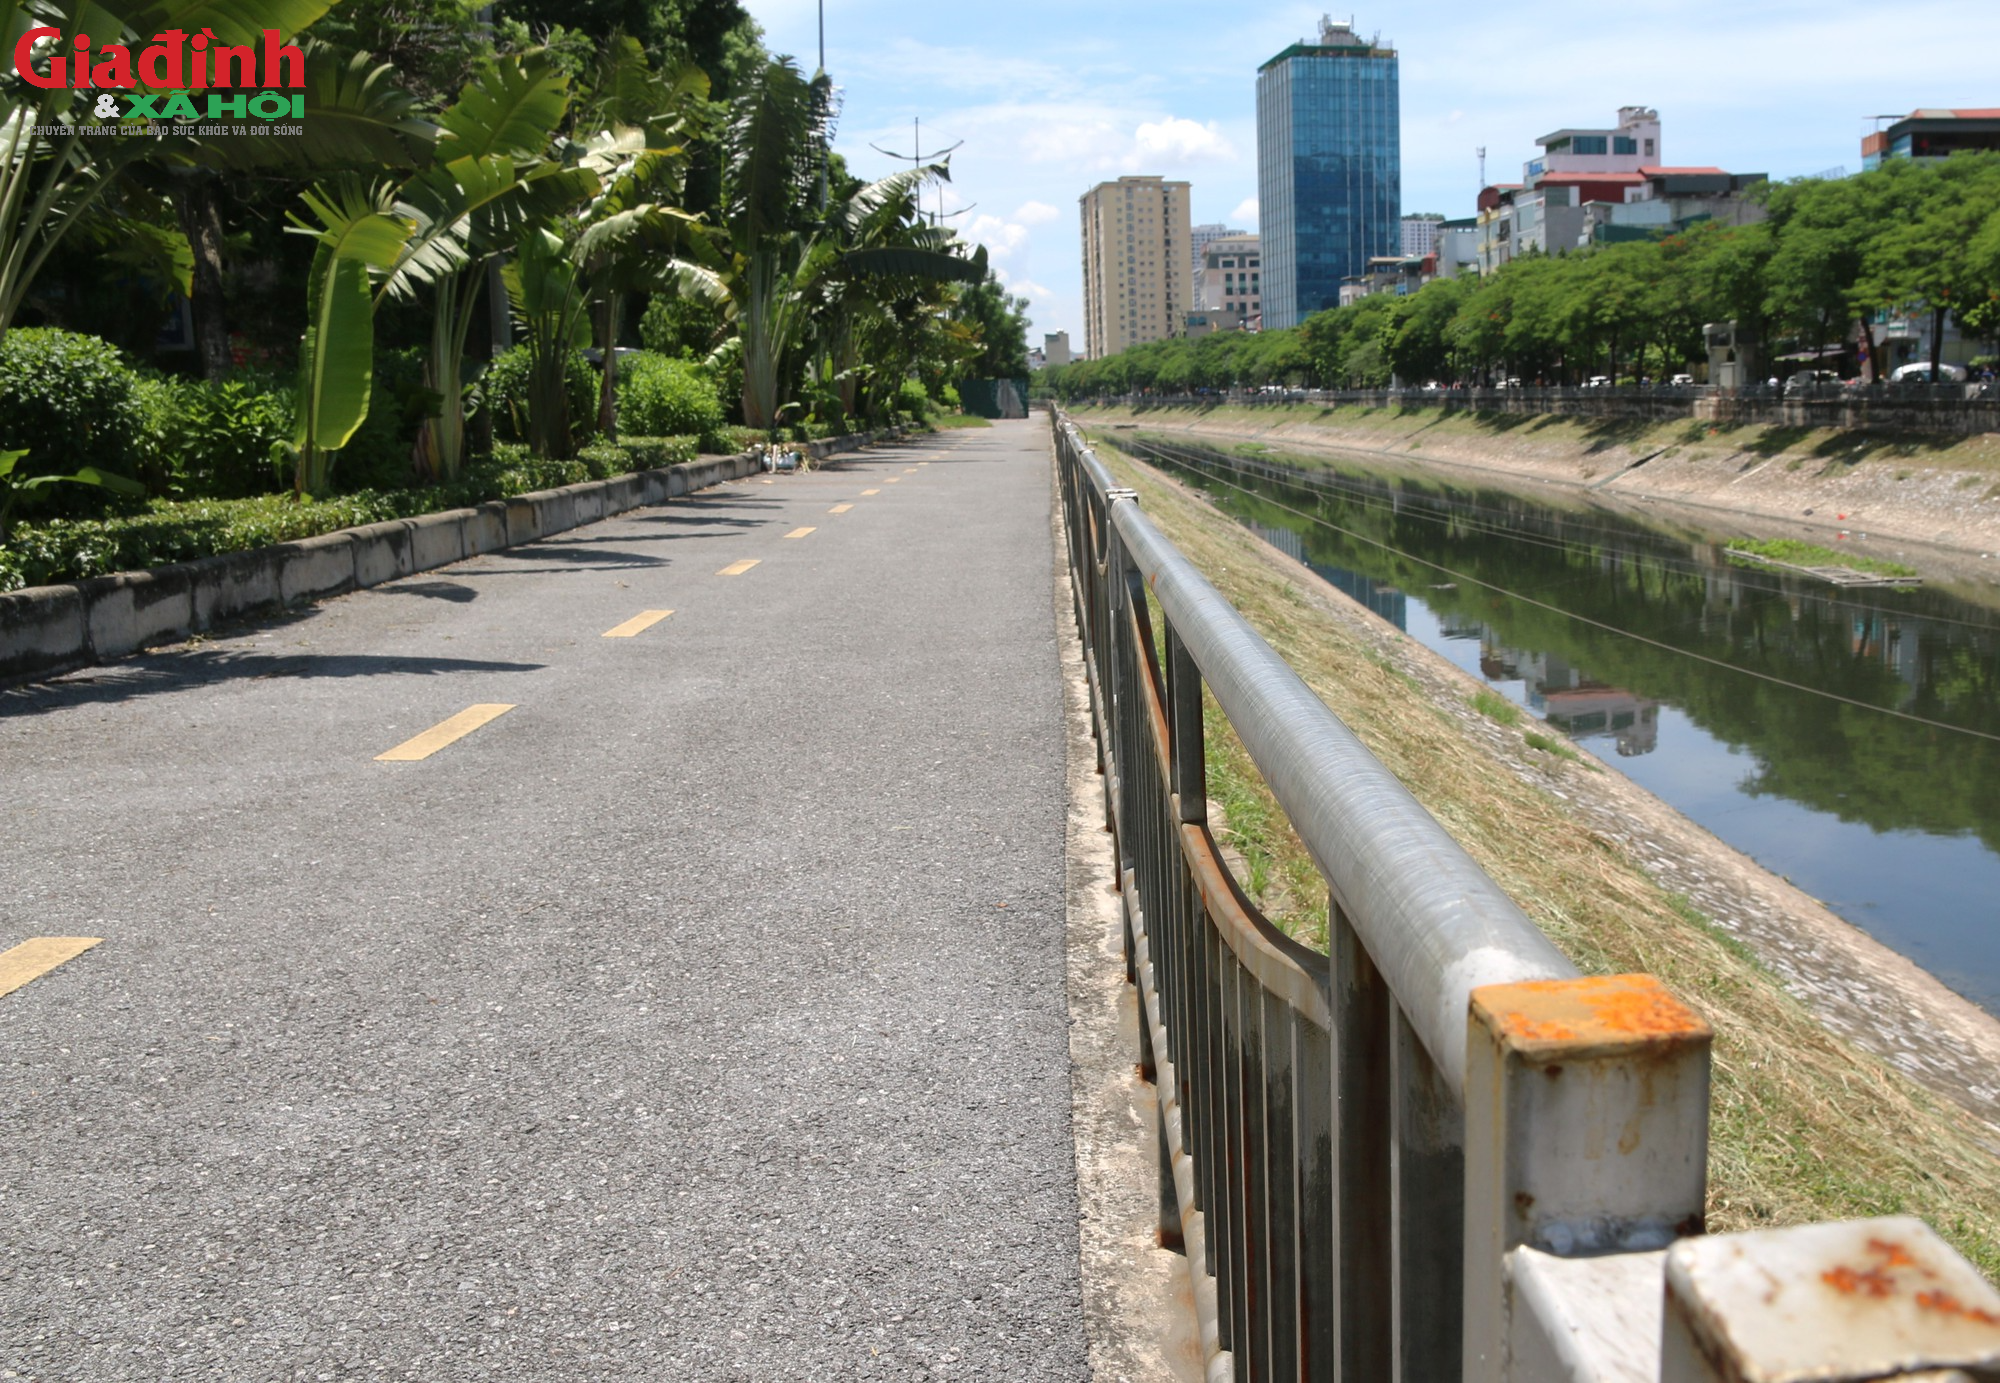 Hà Nội: Con đường đi bộ 64 tỉ ven sông Tô Lịch nhếch nhác, xuống cấp vương vãi bơm kim tiêm - Ảnh 8.